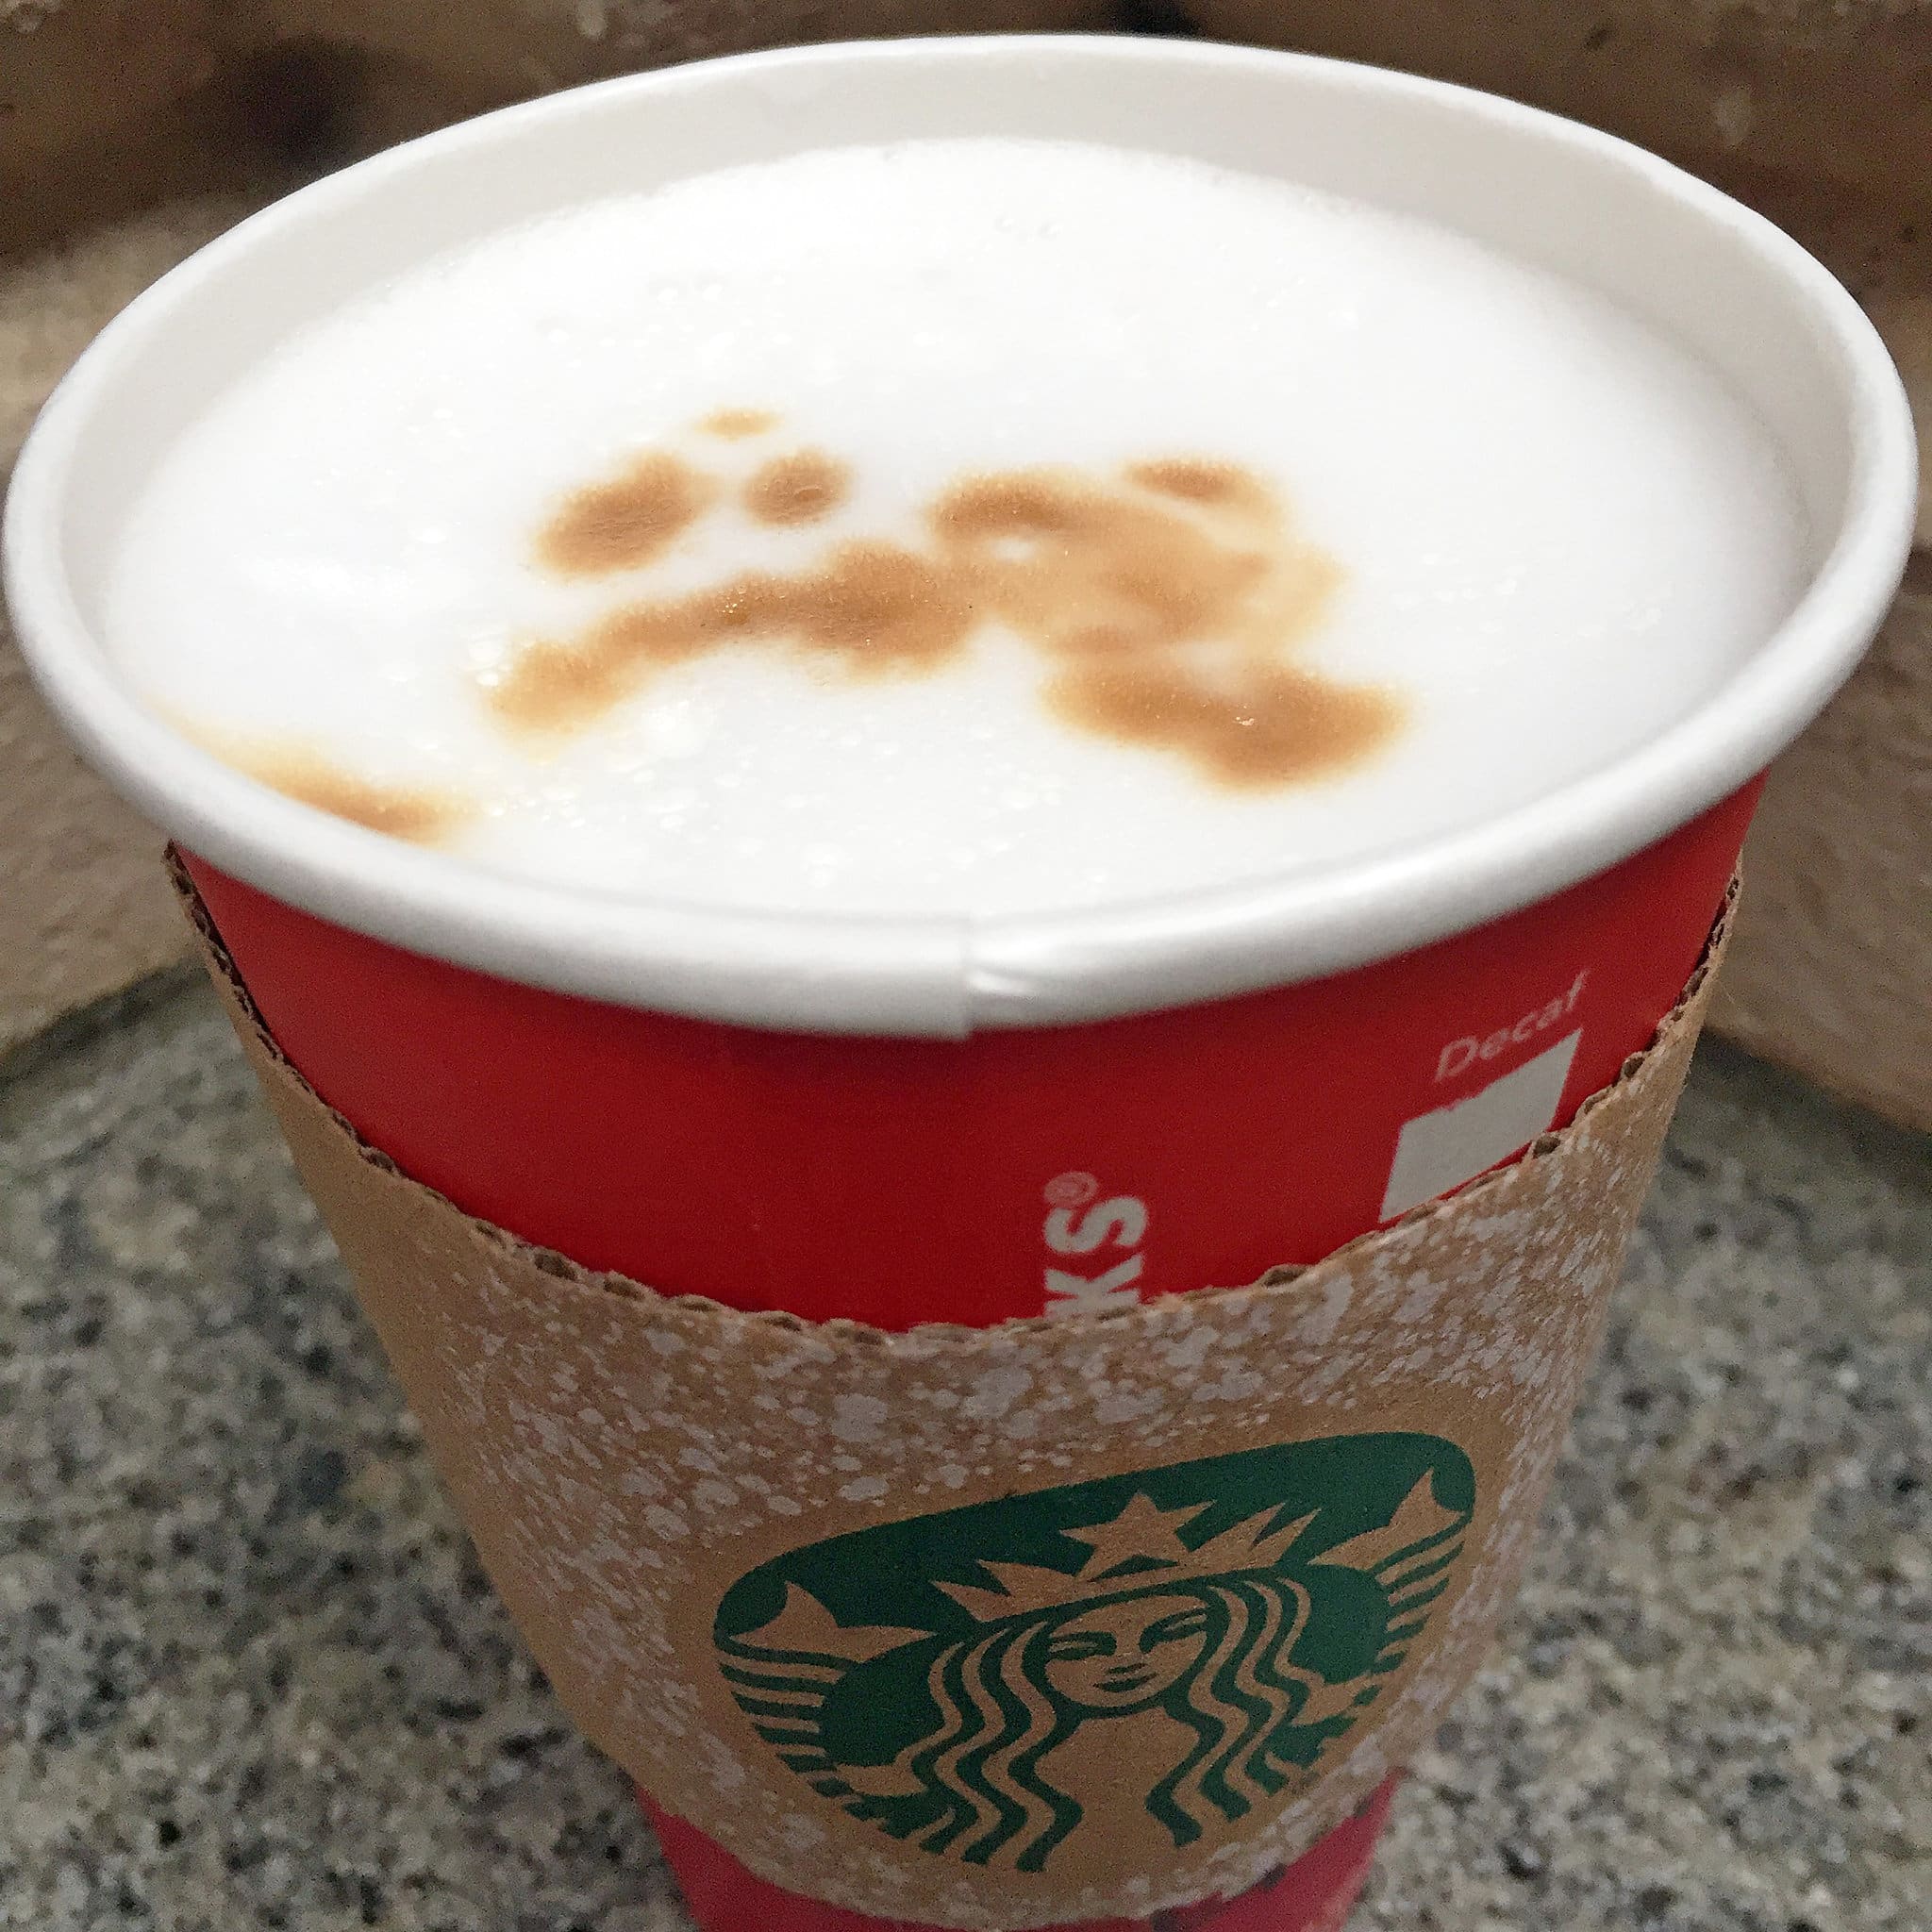 Starbucks Latte Macchiato Review